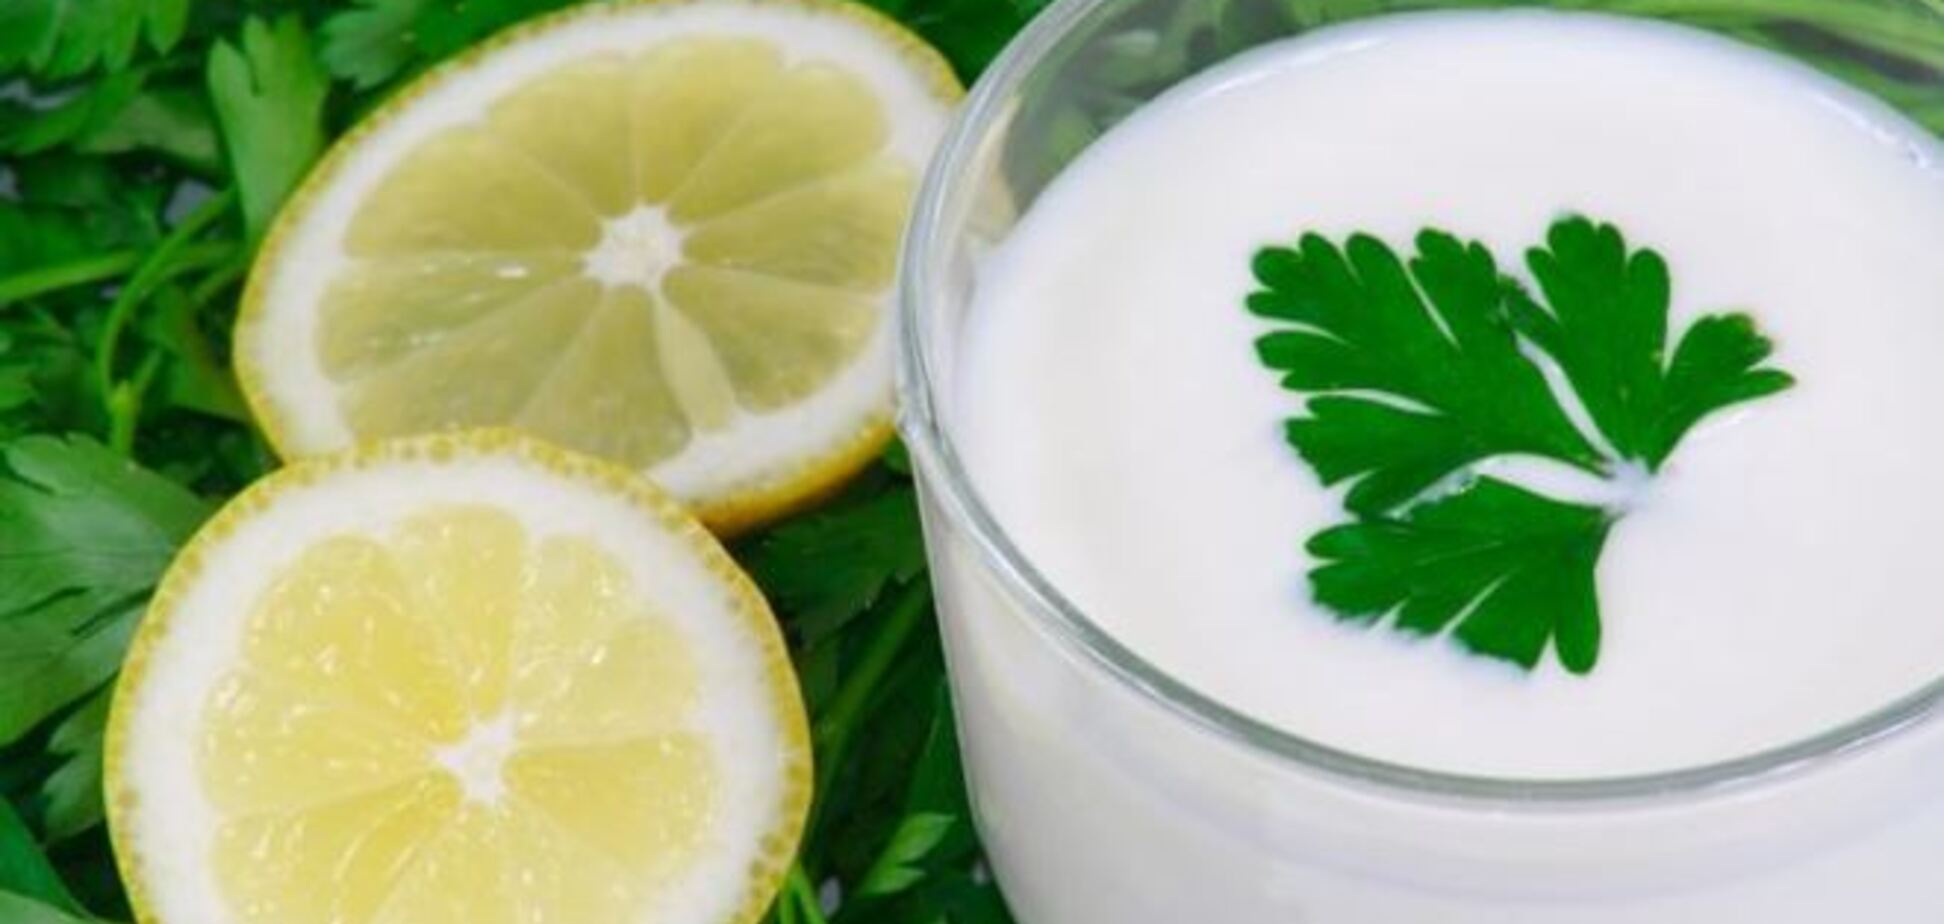 5 удивительных фактов о свойствах кисломолочных продуктов